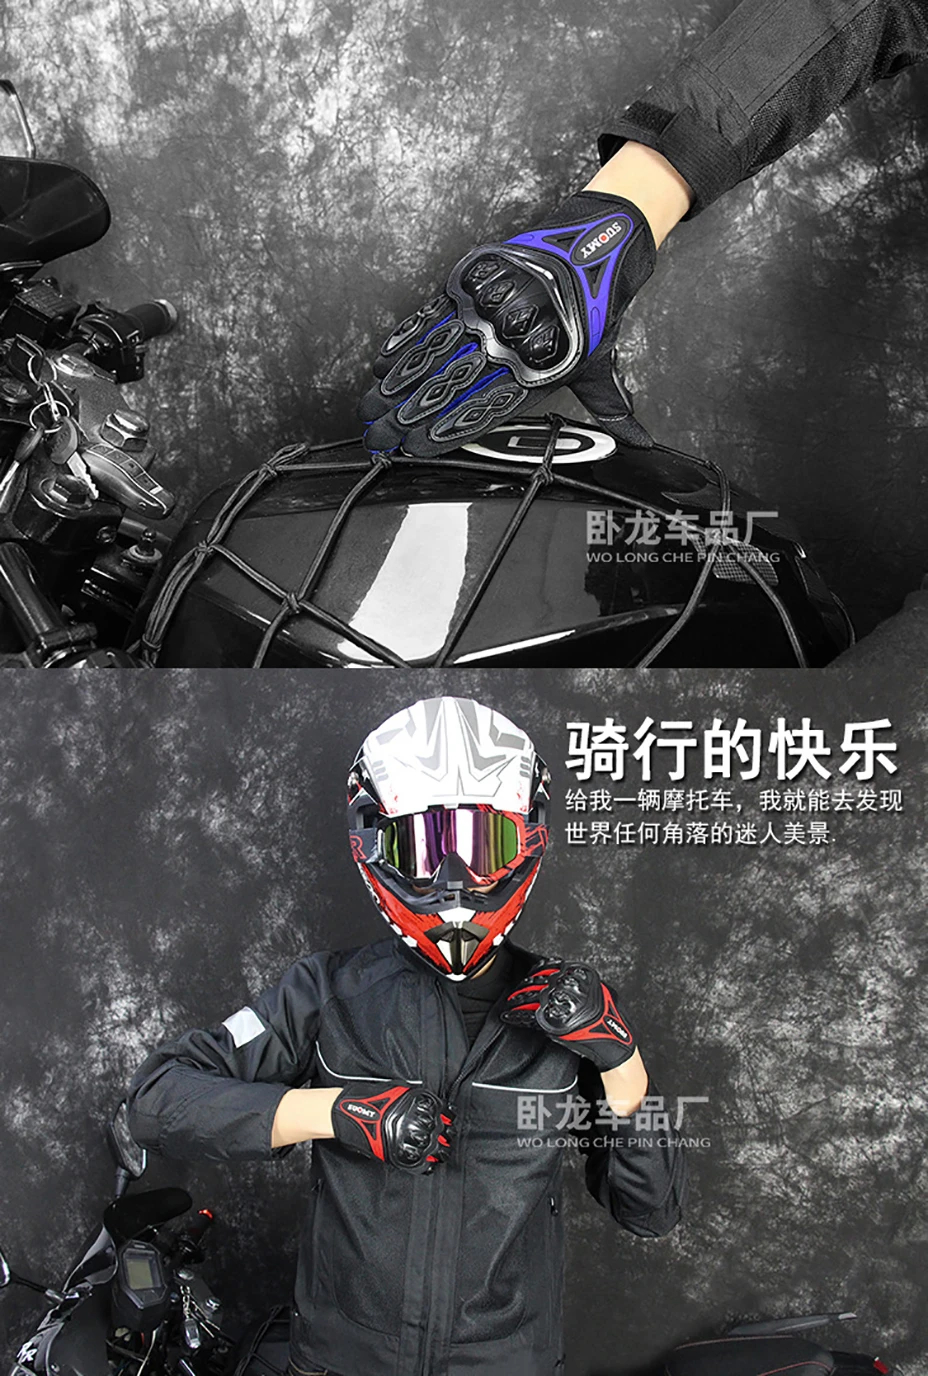 Экран сенсорный мужские мотоциклетные перчатки/женские мотопробег, гонки Перчатки дышащая ПВХ оболочке прикрепляющийся к moto велосипед Перчатки